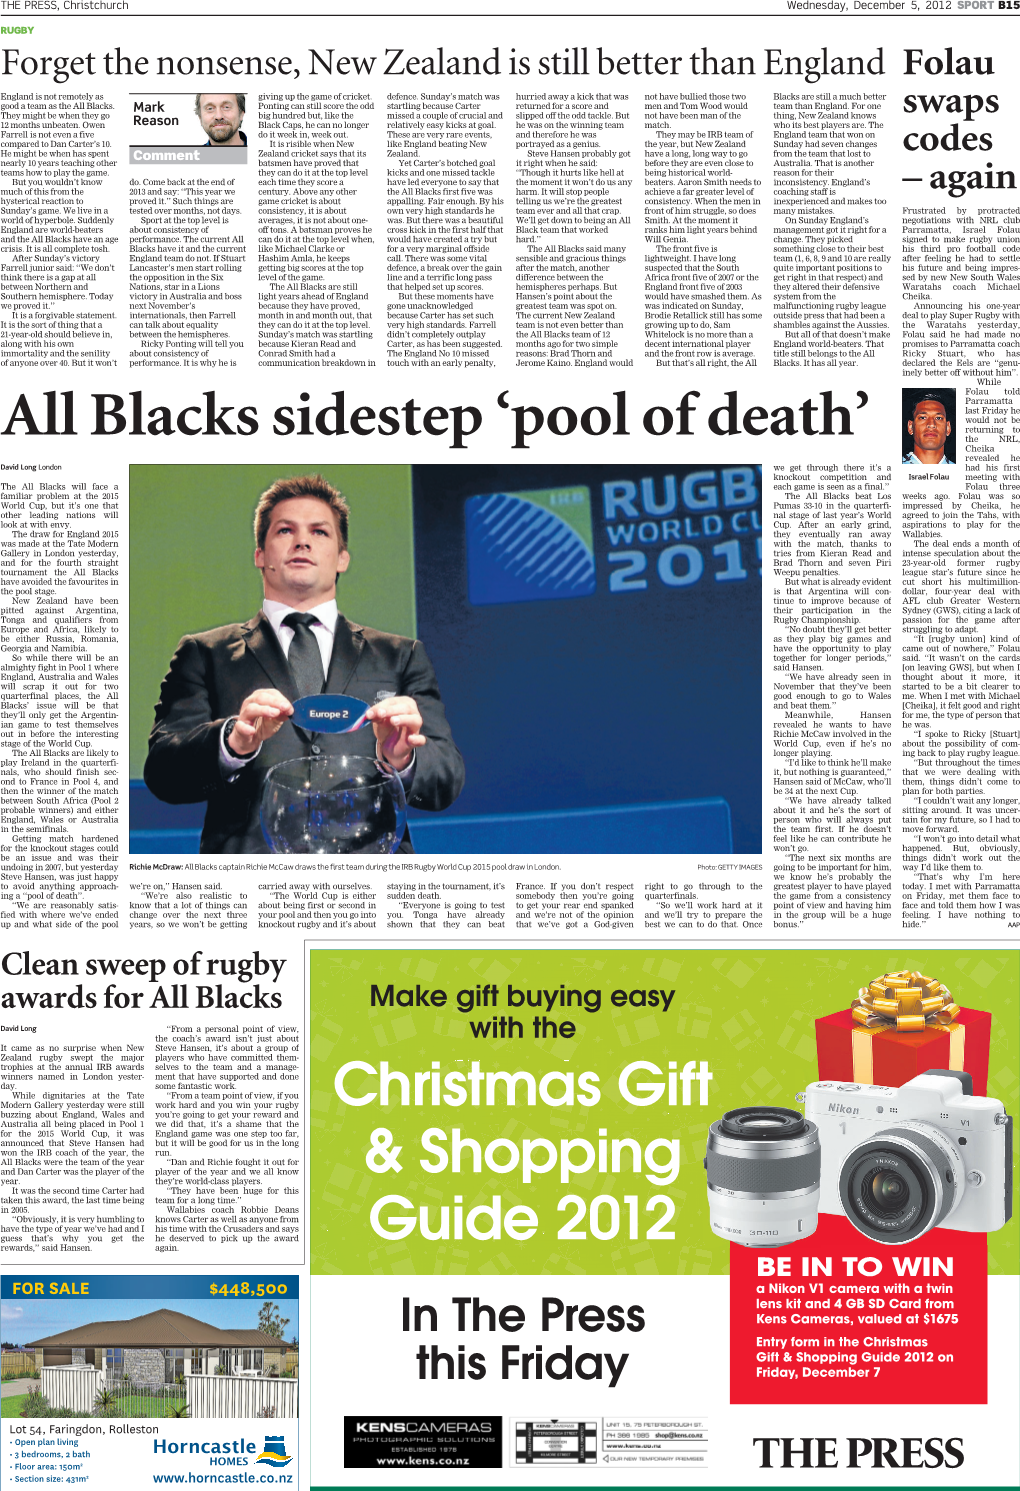 All Blacks Sidestep 'Pool of Death'